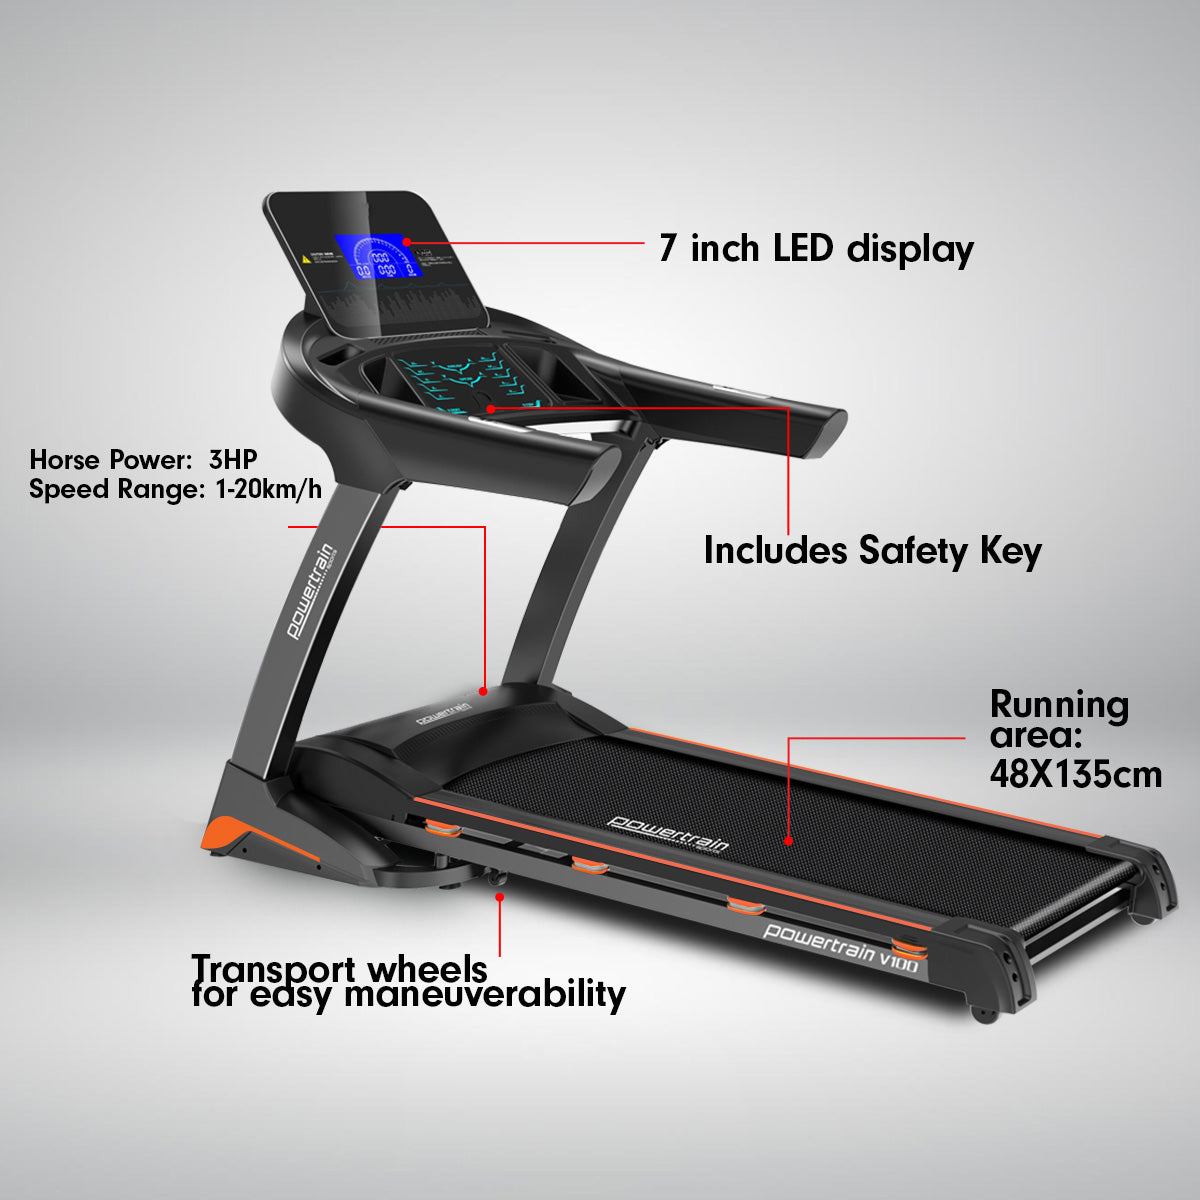 Powertrain V100 Foldable Treadmill